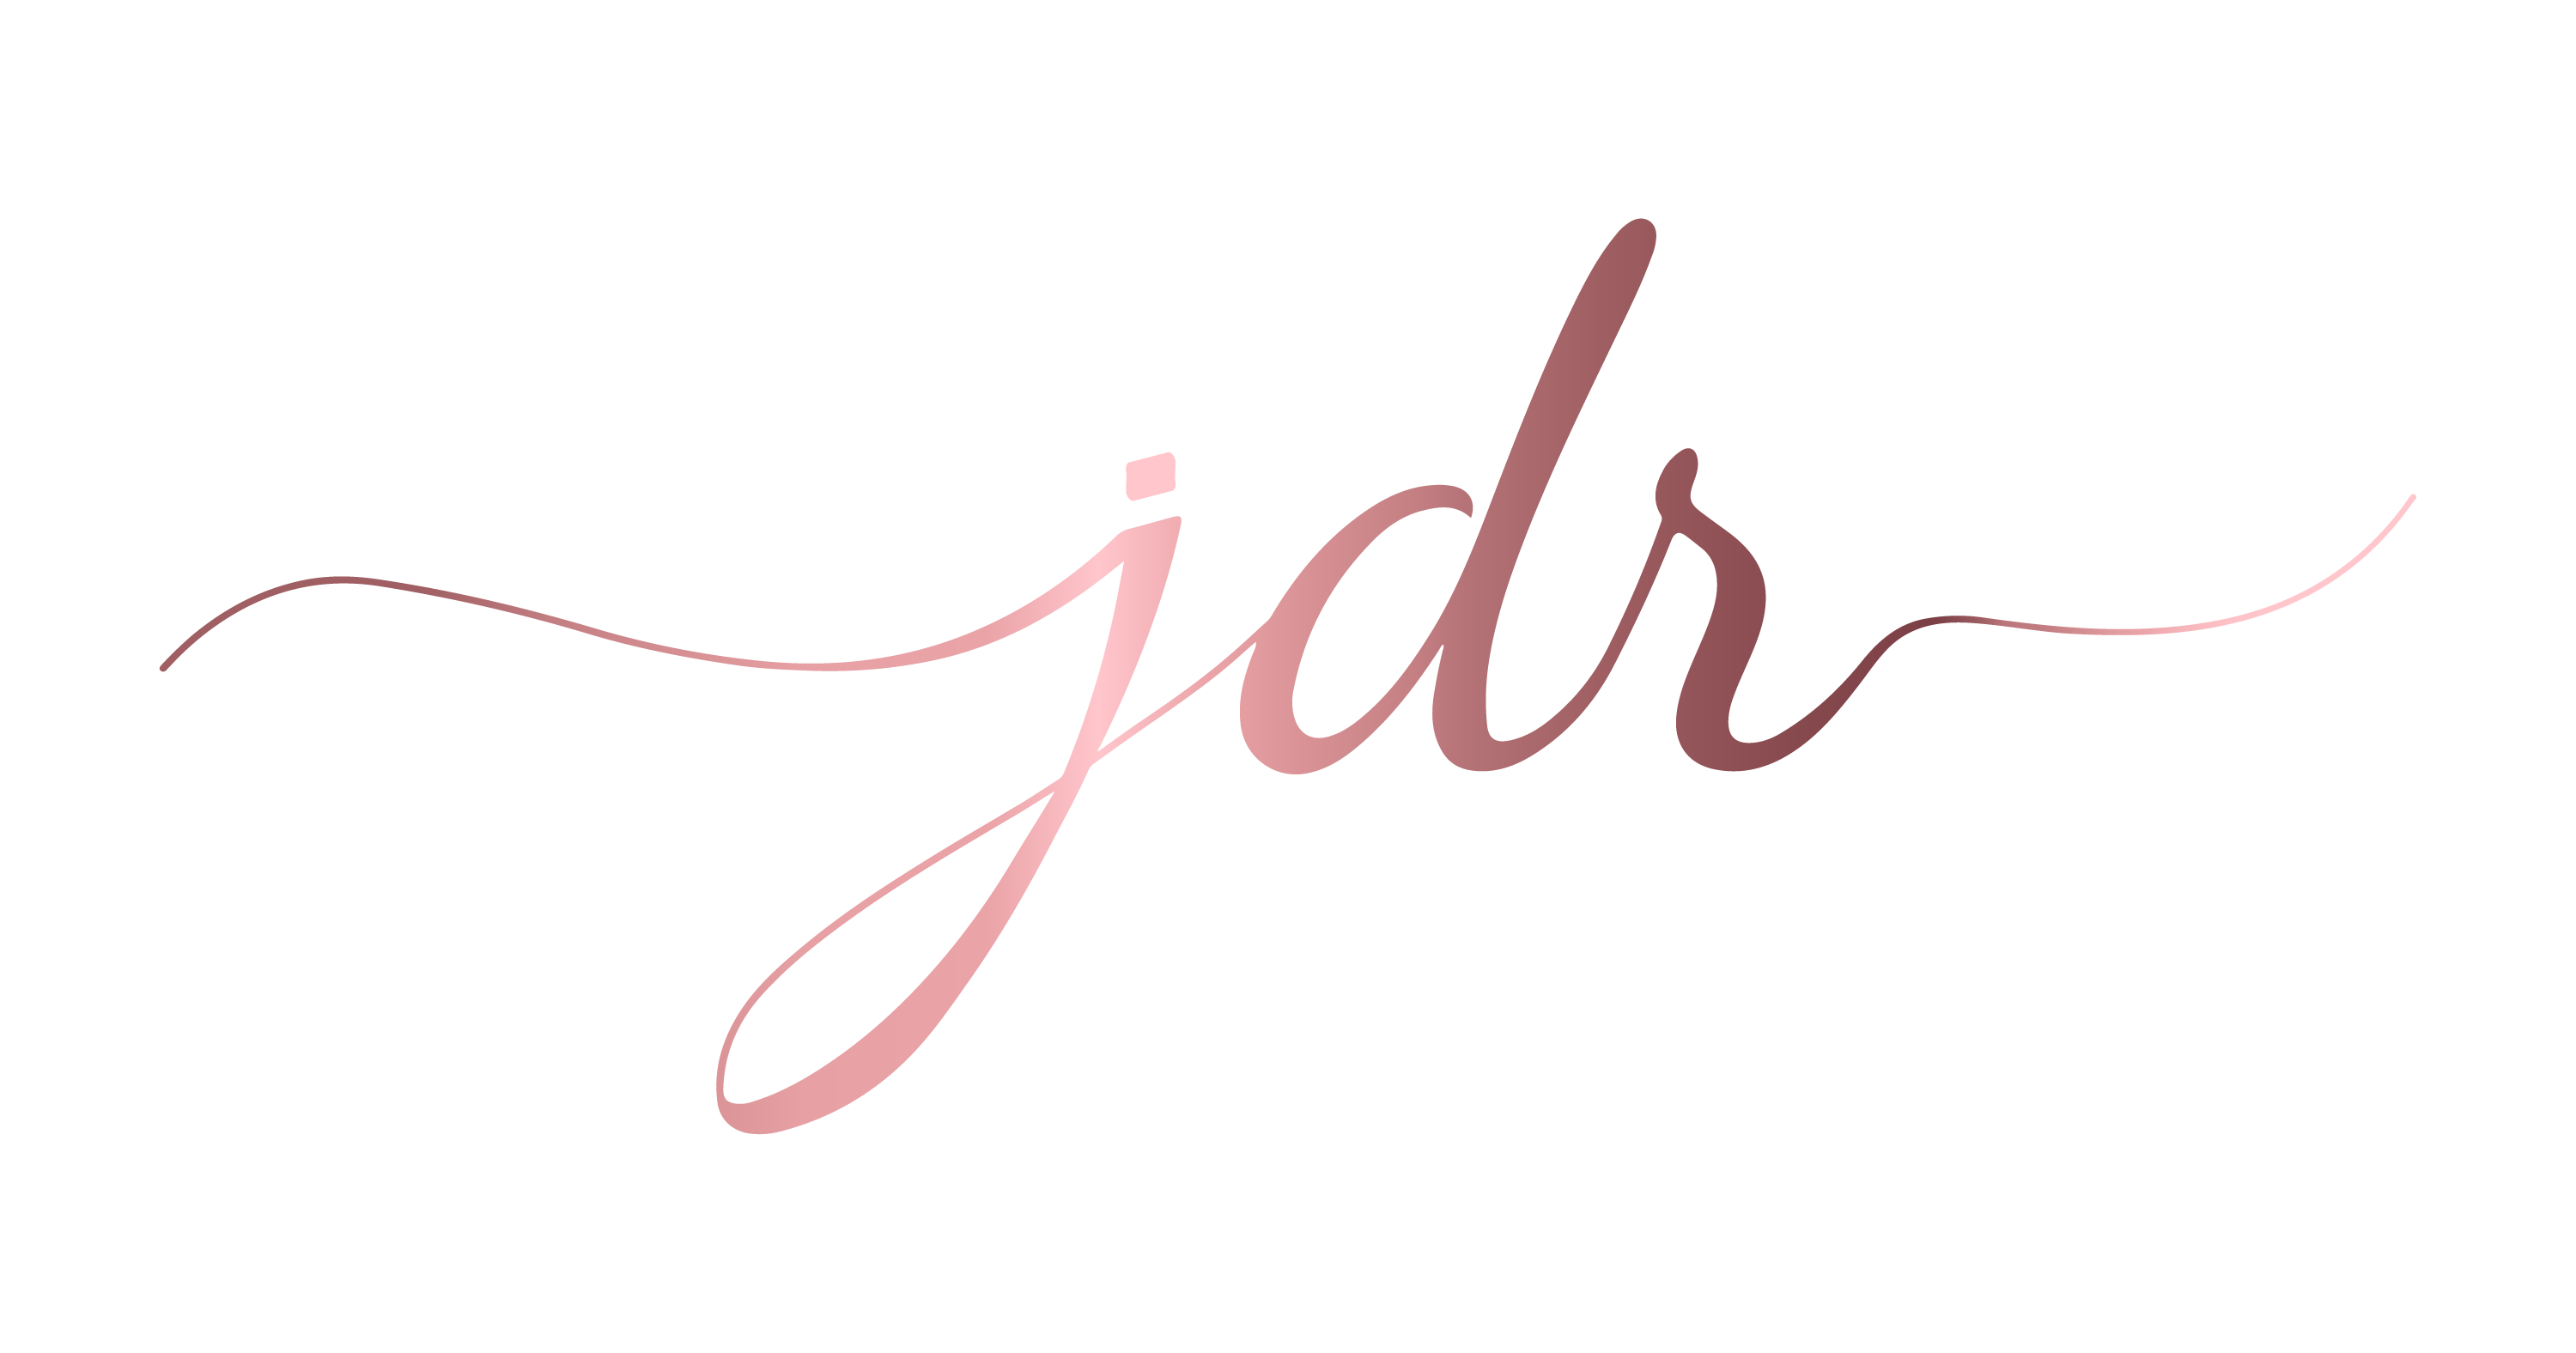 Logo JDR